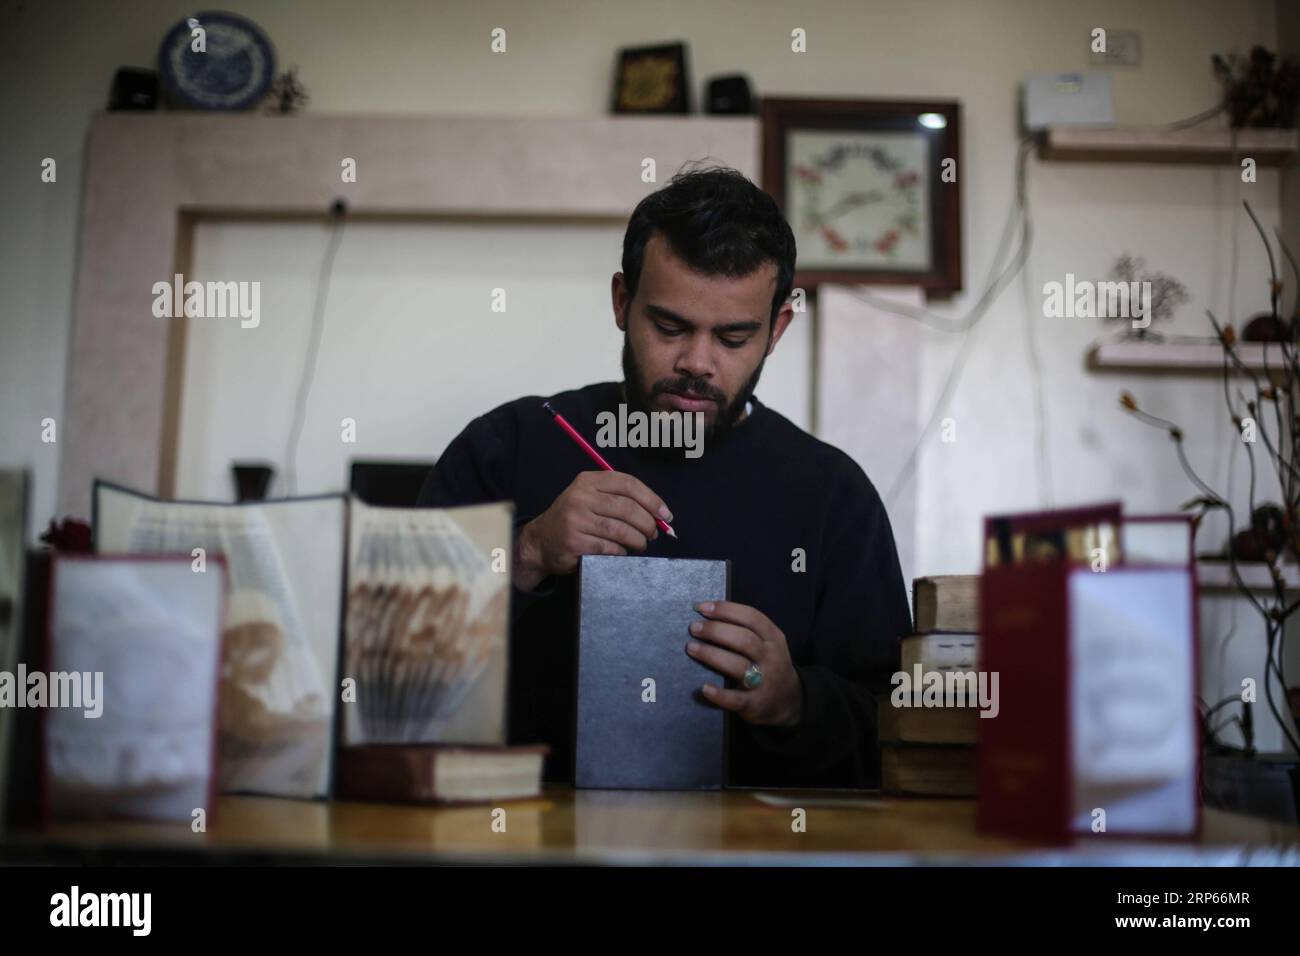 (190103) -- GAZA, 3 gennaio 2019 -- Ahmed Humaid, 28, piega fogli di carta per creare forme e parole all'interno della sua casa nel campo profughi di Nusseirat nella Striscia di Gaza centrale, il 31 dicembre 2018. Un giovane palestinese disoccupato proveniente da un campo profughi nella Striscia di Gaza trova un modo creativo per combattere la disoccupazione imparando l'Origami, o l'arte della piegatura della carta, online. Stringer) PER ANDARE CON la caratteristica: Gaza giovane padroneggia l'arte della piegatura della carta per combattere la disoccupazione MIDEAST-GAZA-CARTA FOLDING-ART MohammedxDahman PUBLICATIONxNOTxINxCHN Foto Stock